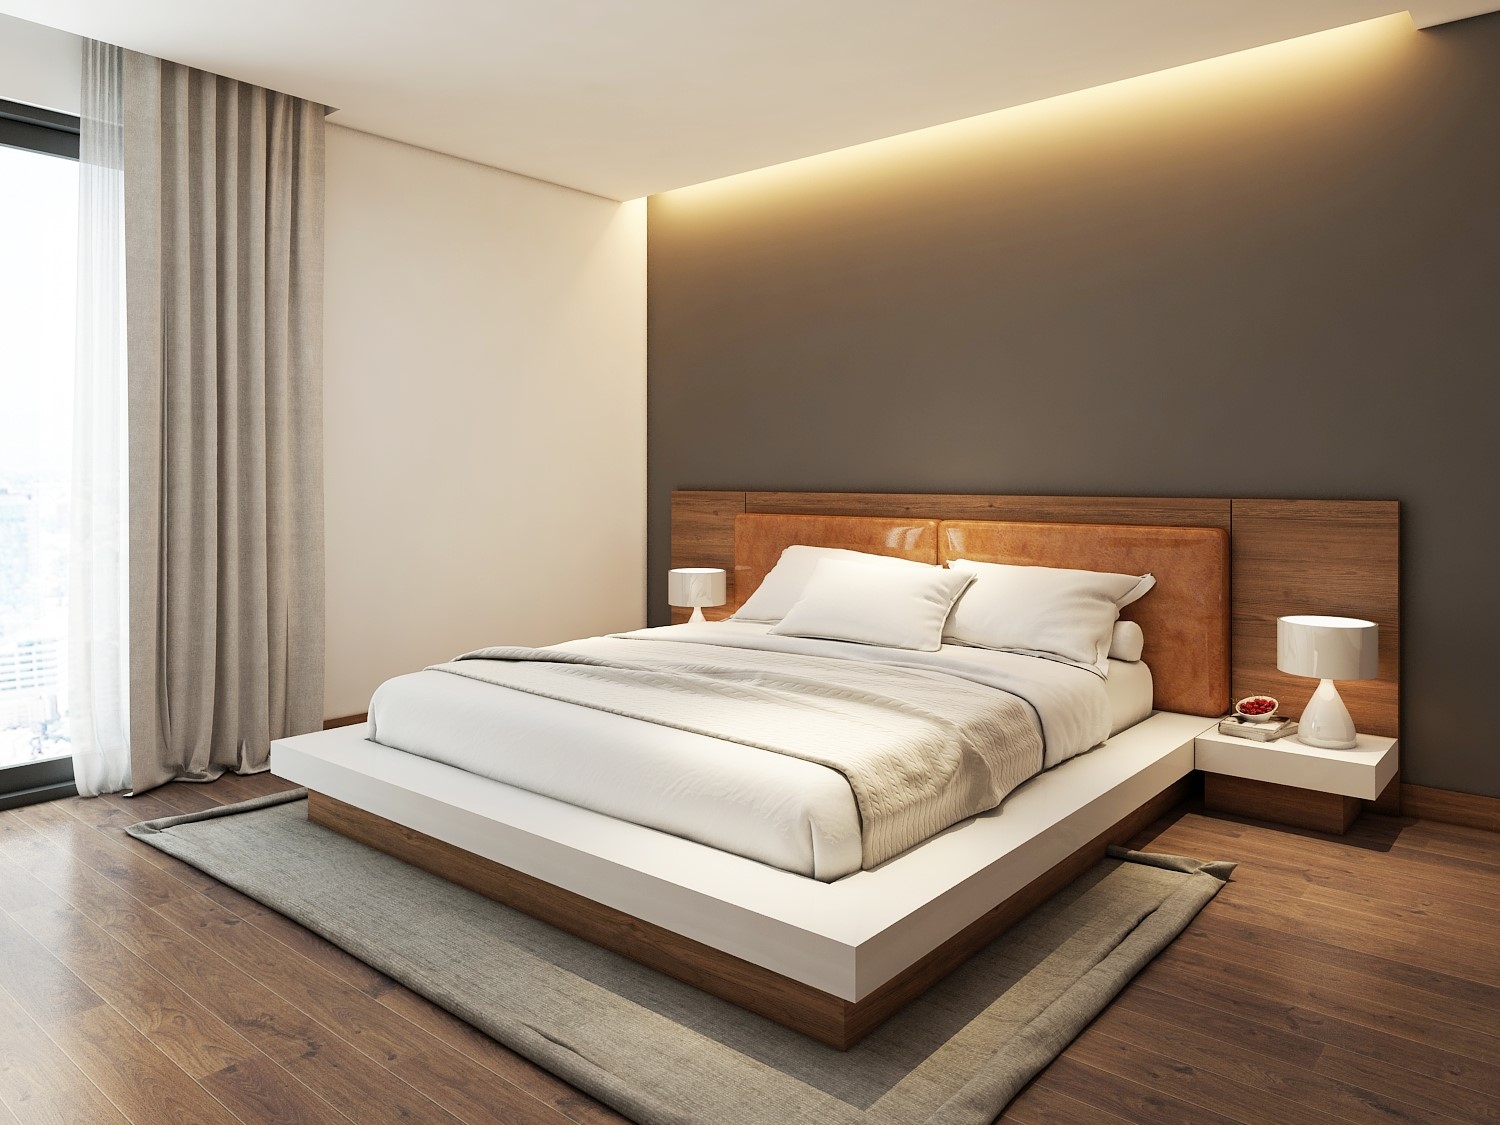 Mẫu giường gỗ trắng, giường gỗ tự nhiên sơn trắng đẹp